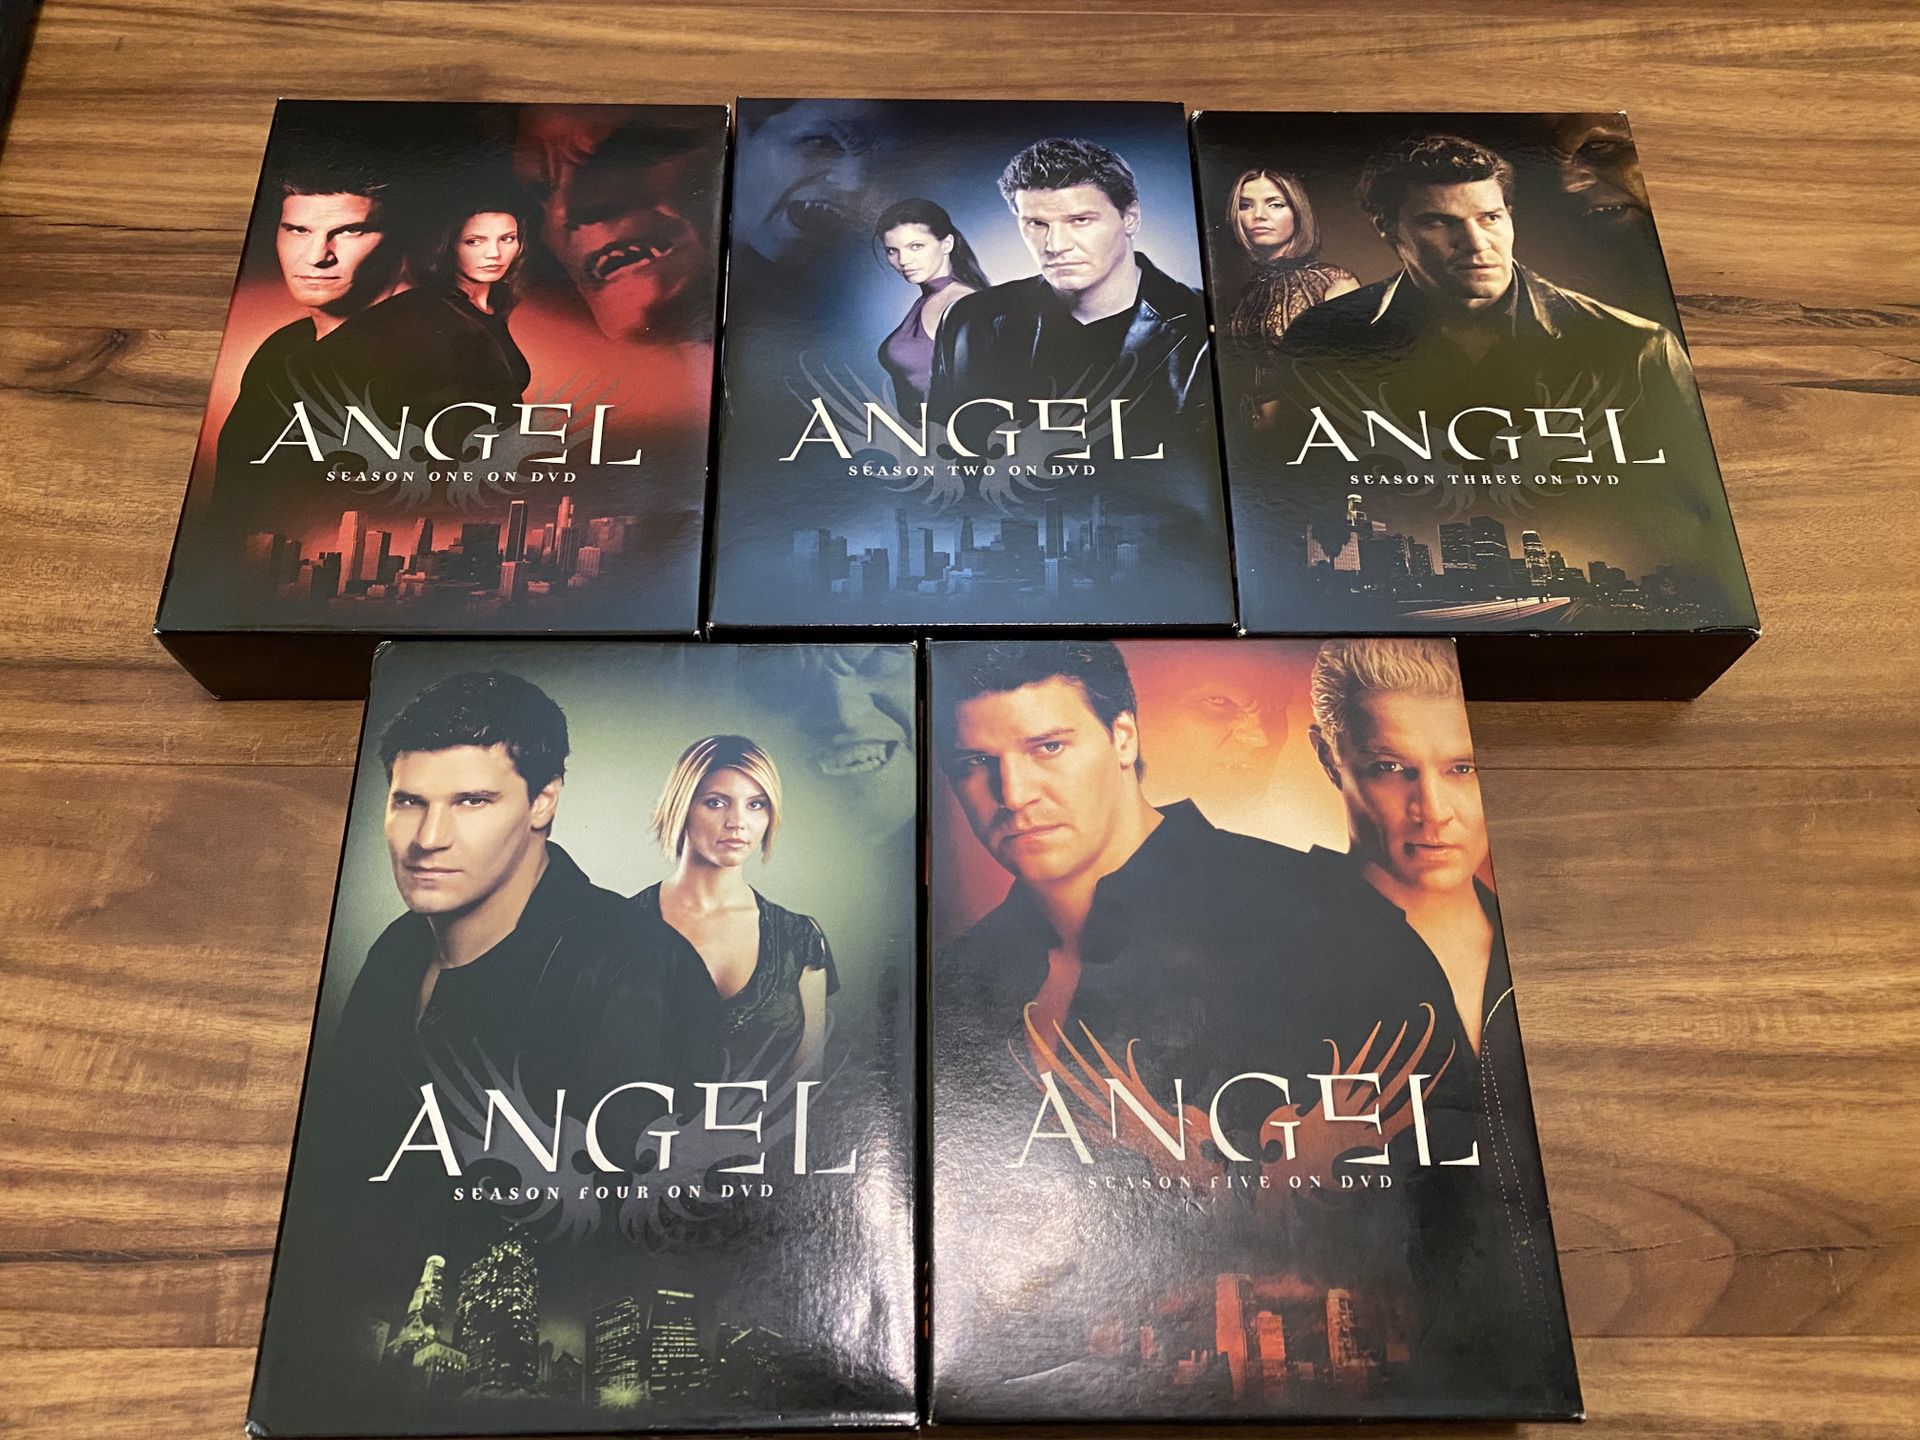 Angel Seasons 1-5 (complete series)